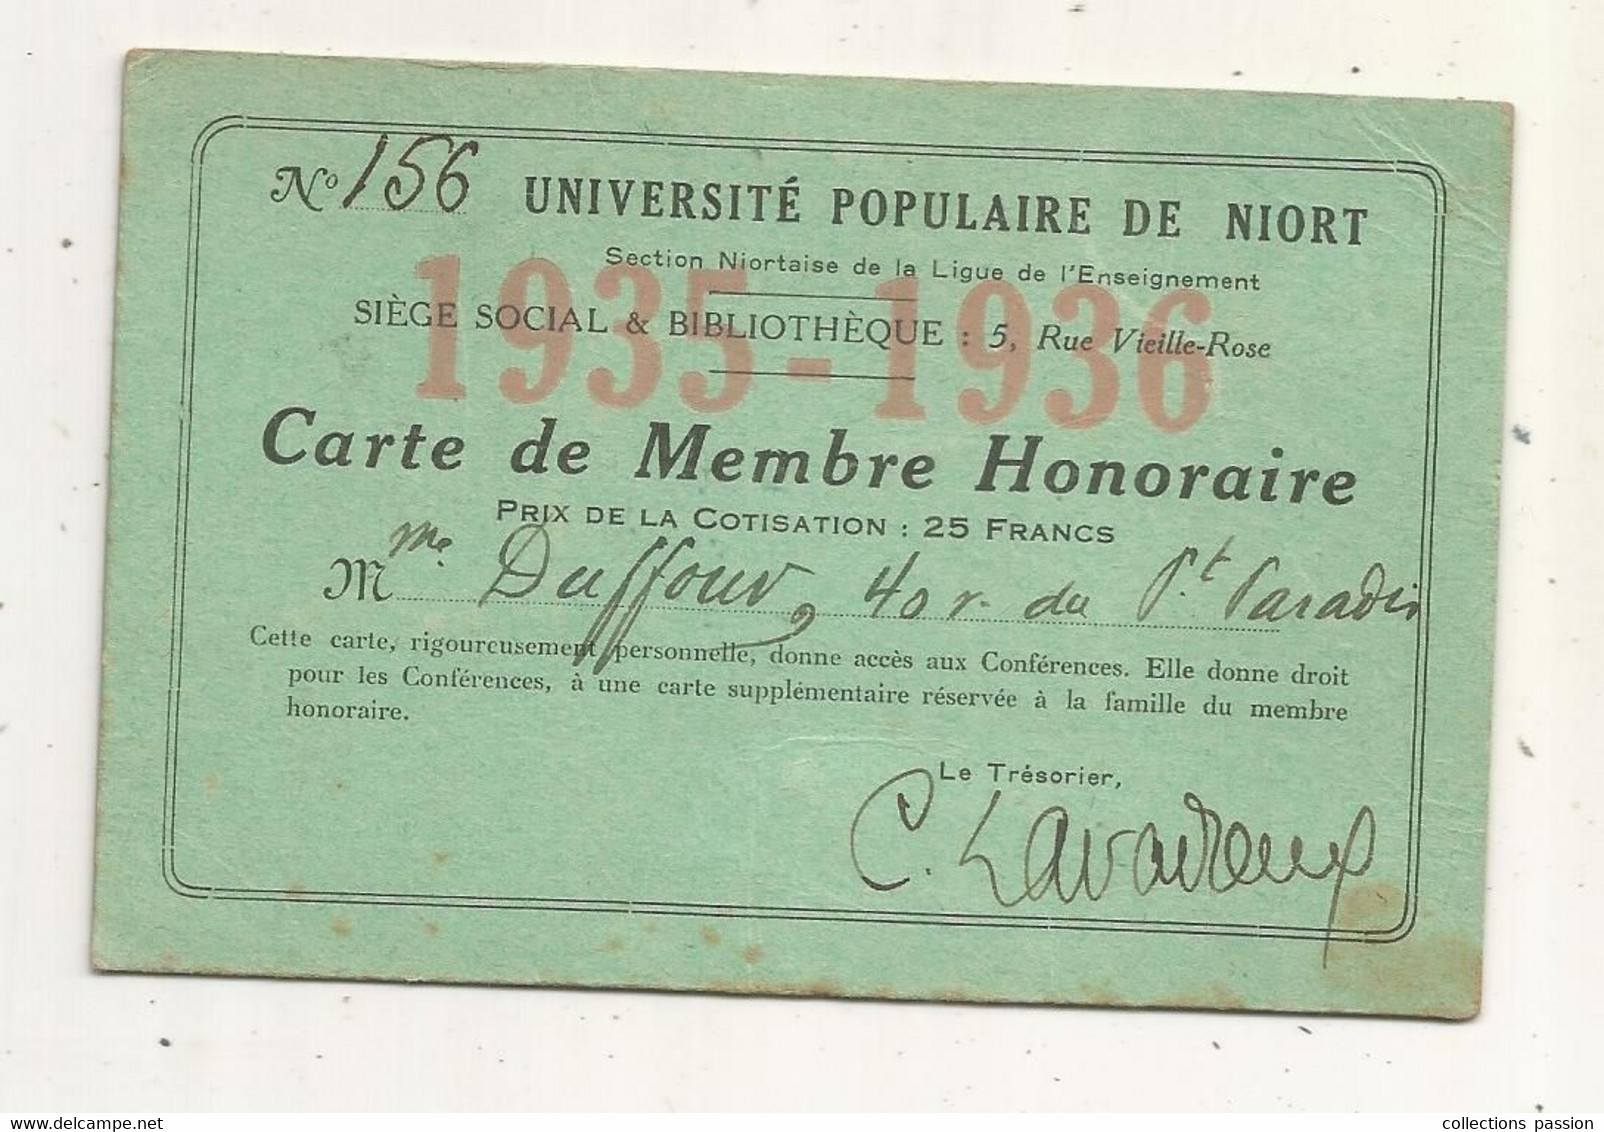 Carte De Membre Honoraire , UNIVERSITE POPULAIRE DE NIORT,1935-1936 - Membership Cards